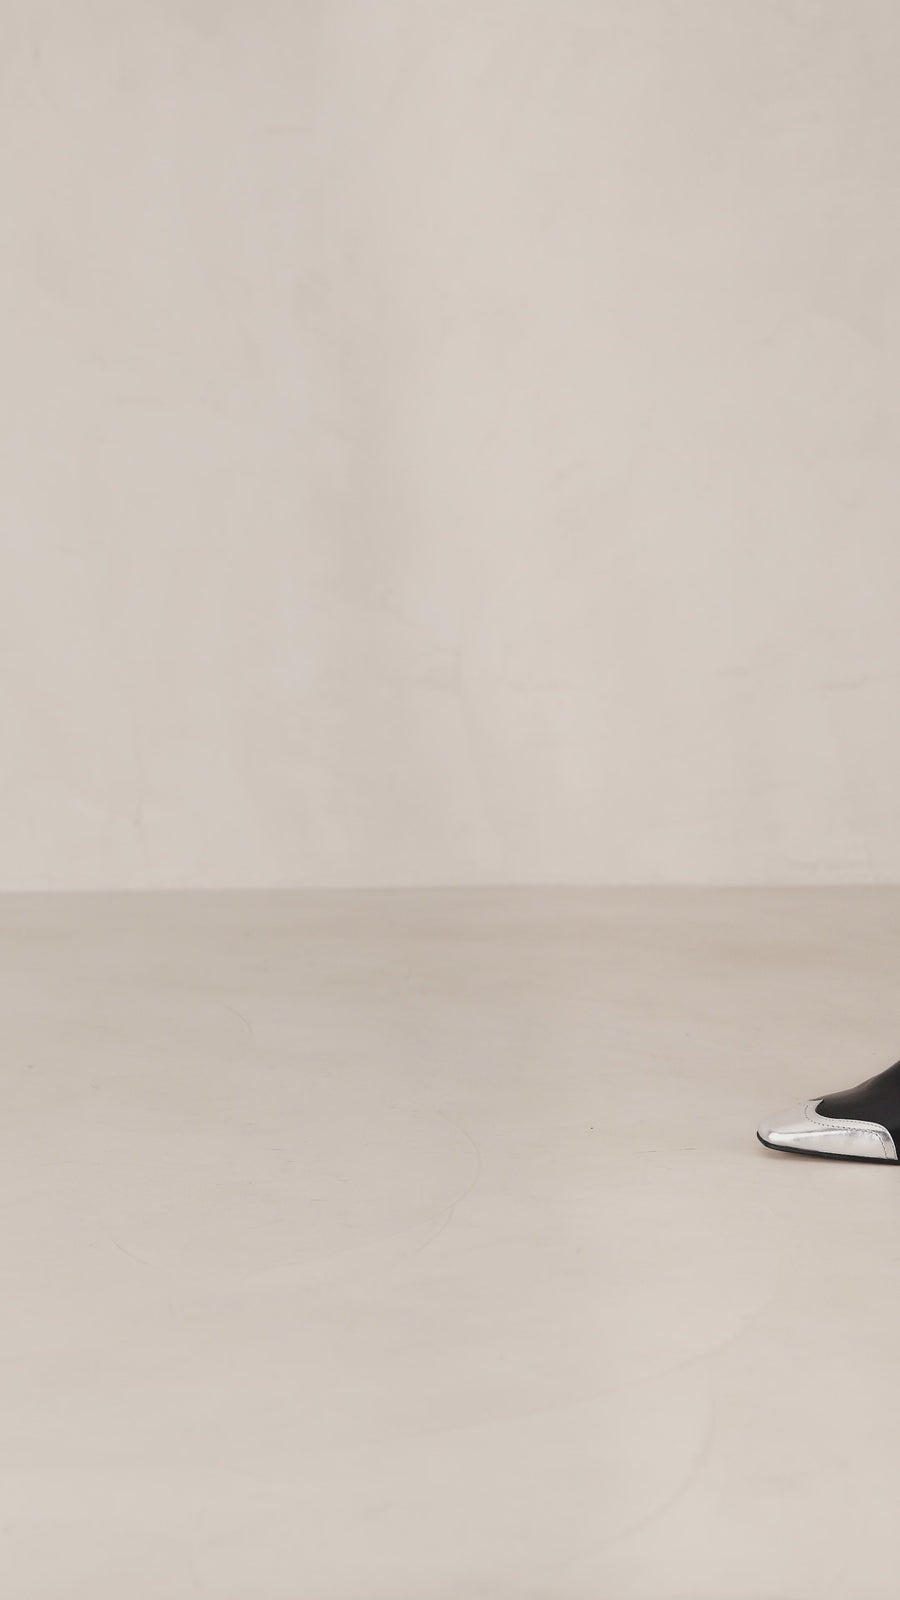 Hudson Shimmer Bicolor Black Silver Leather Ankle Boots